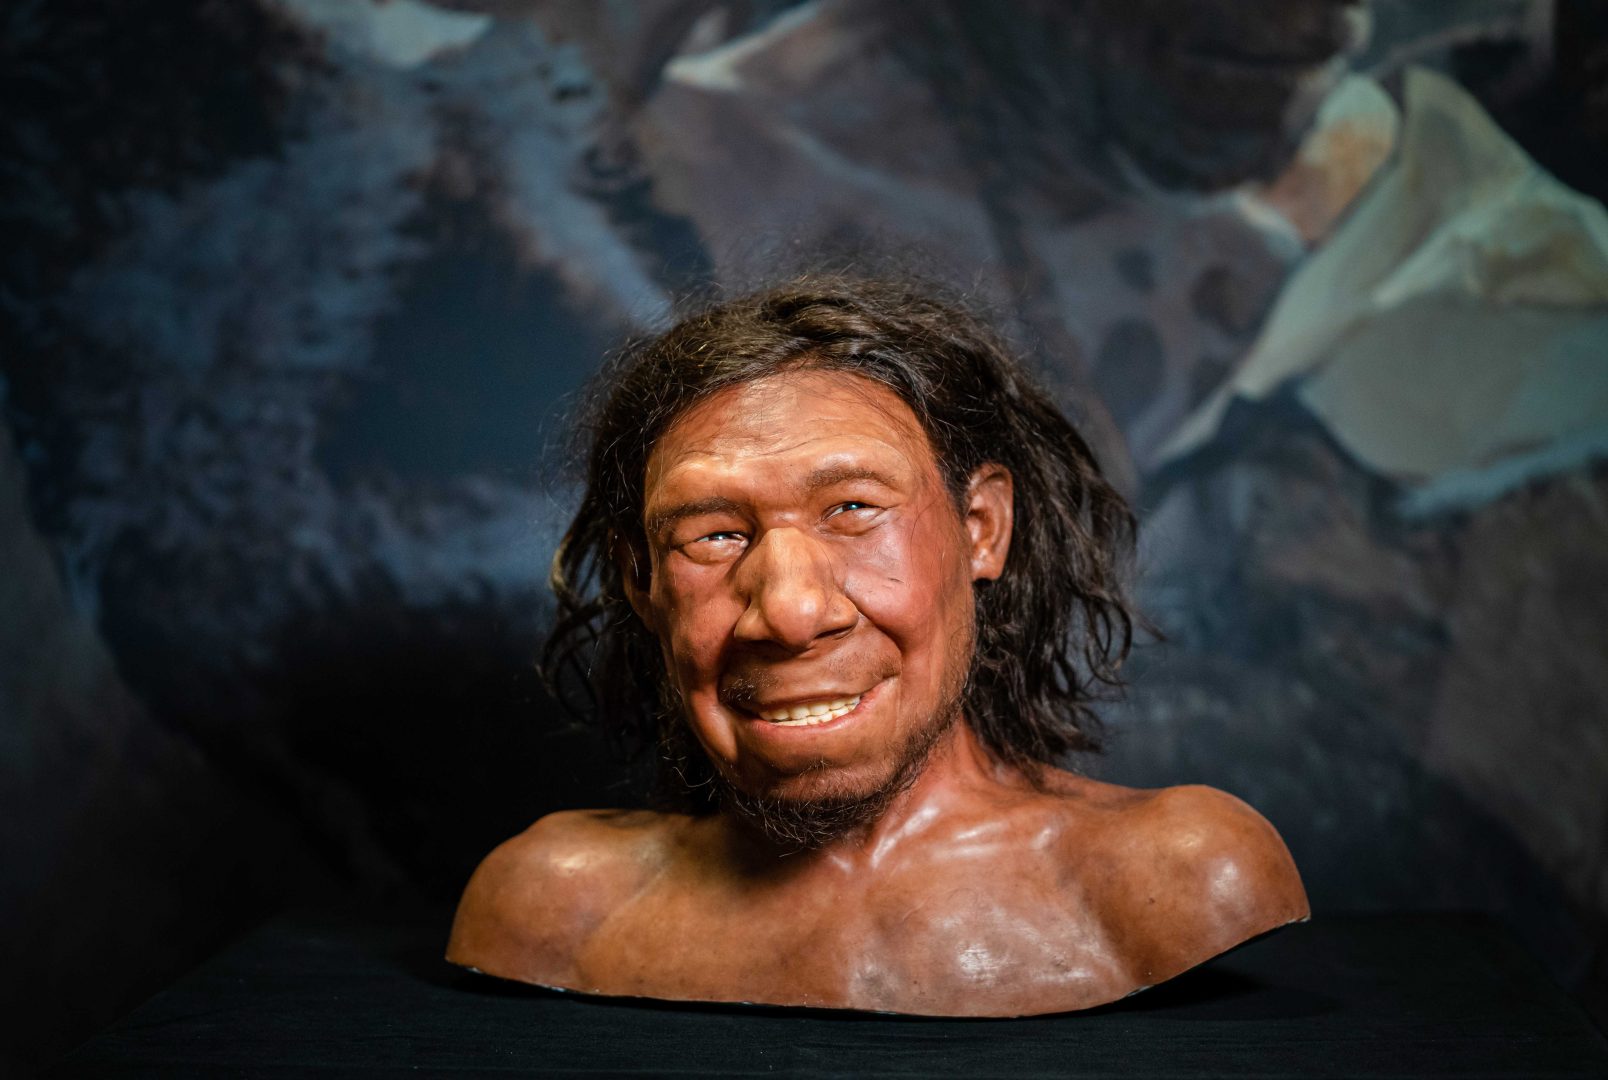 Ръцете на неандерталците не са имали същите способности като при хората